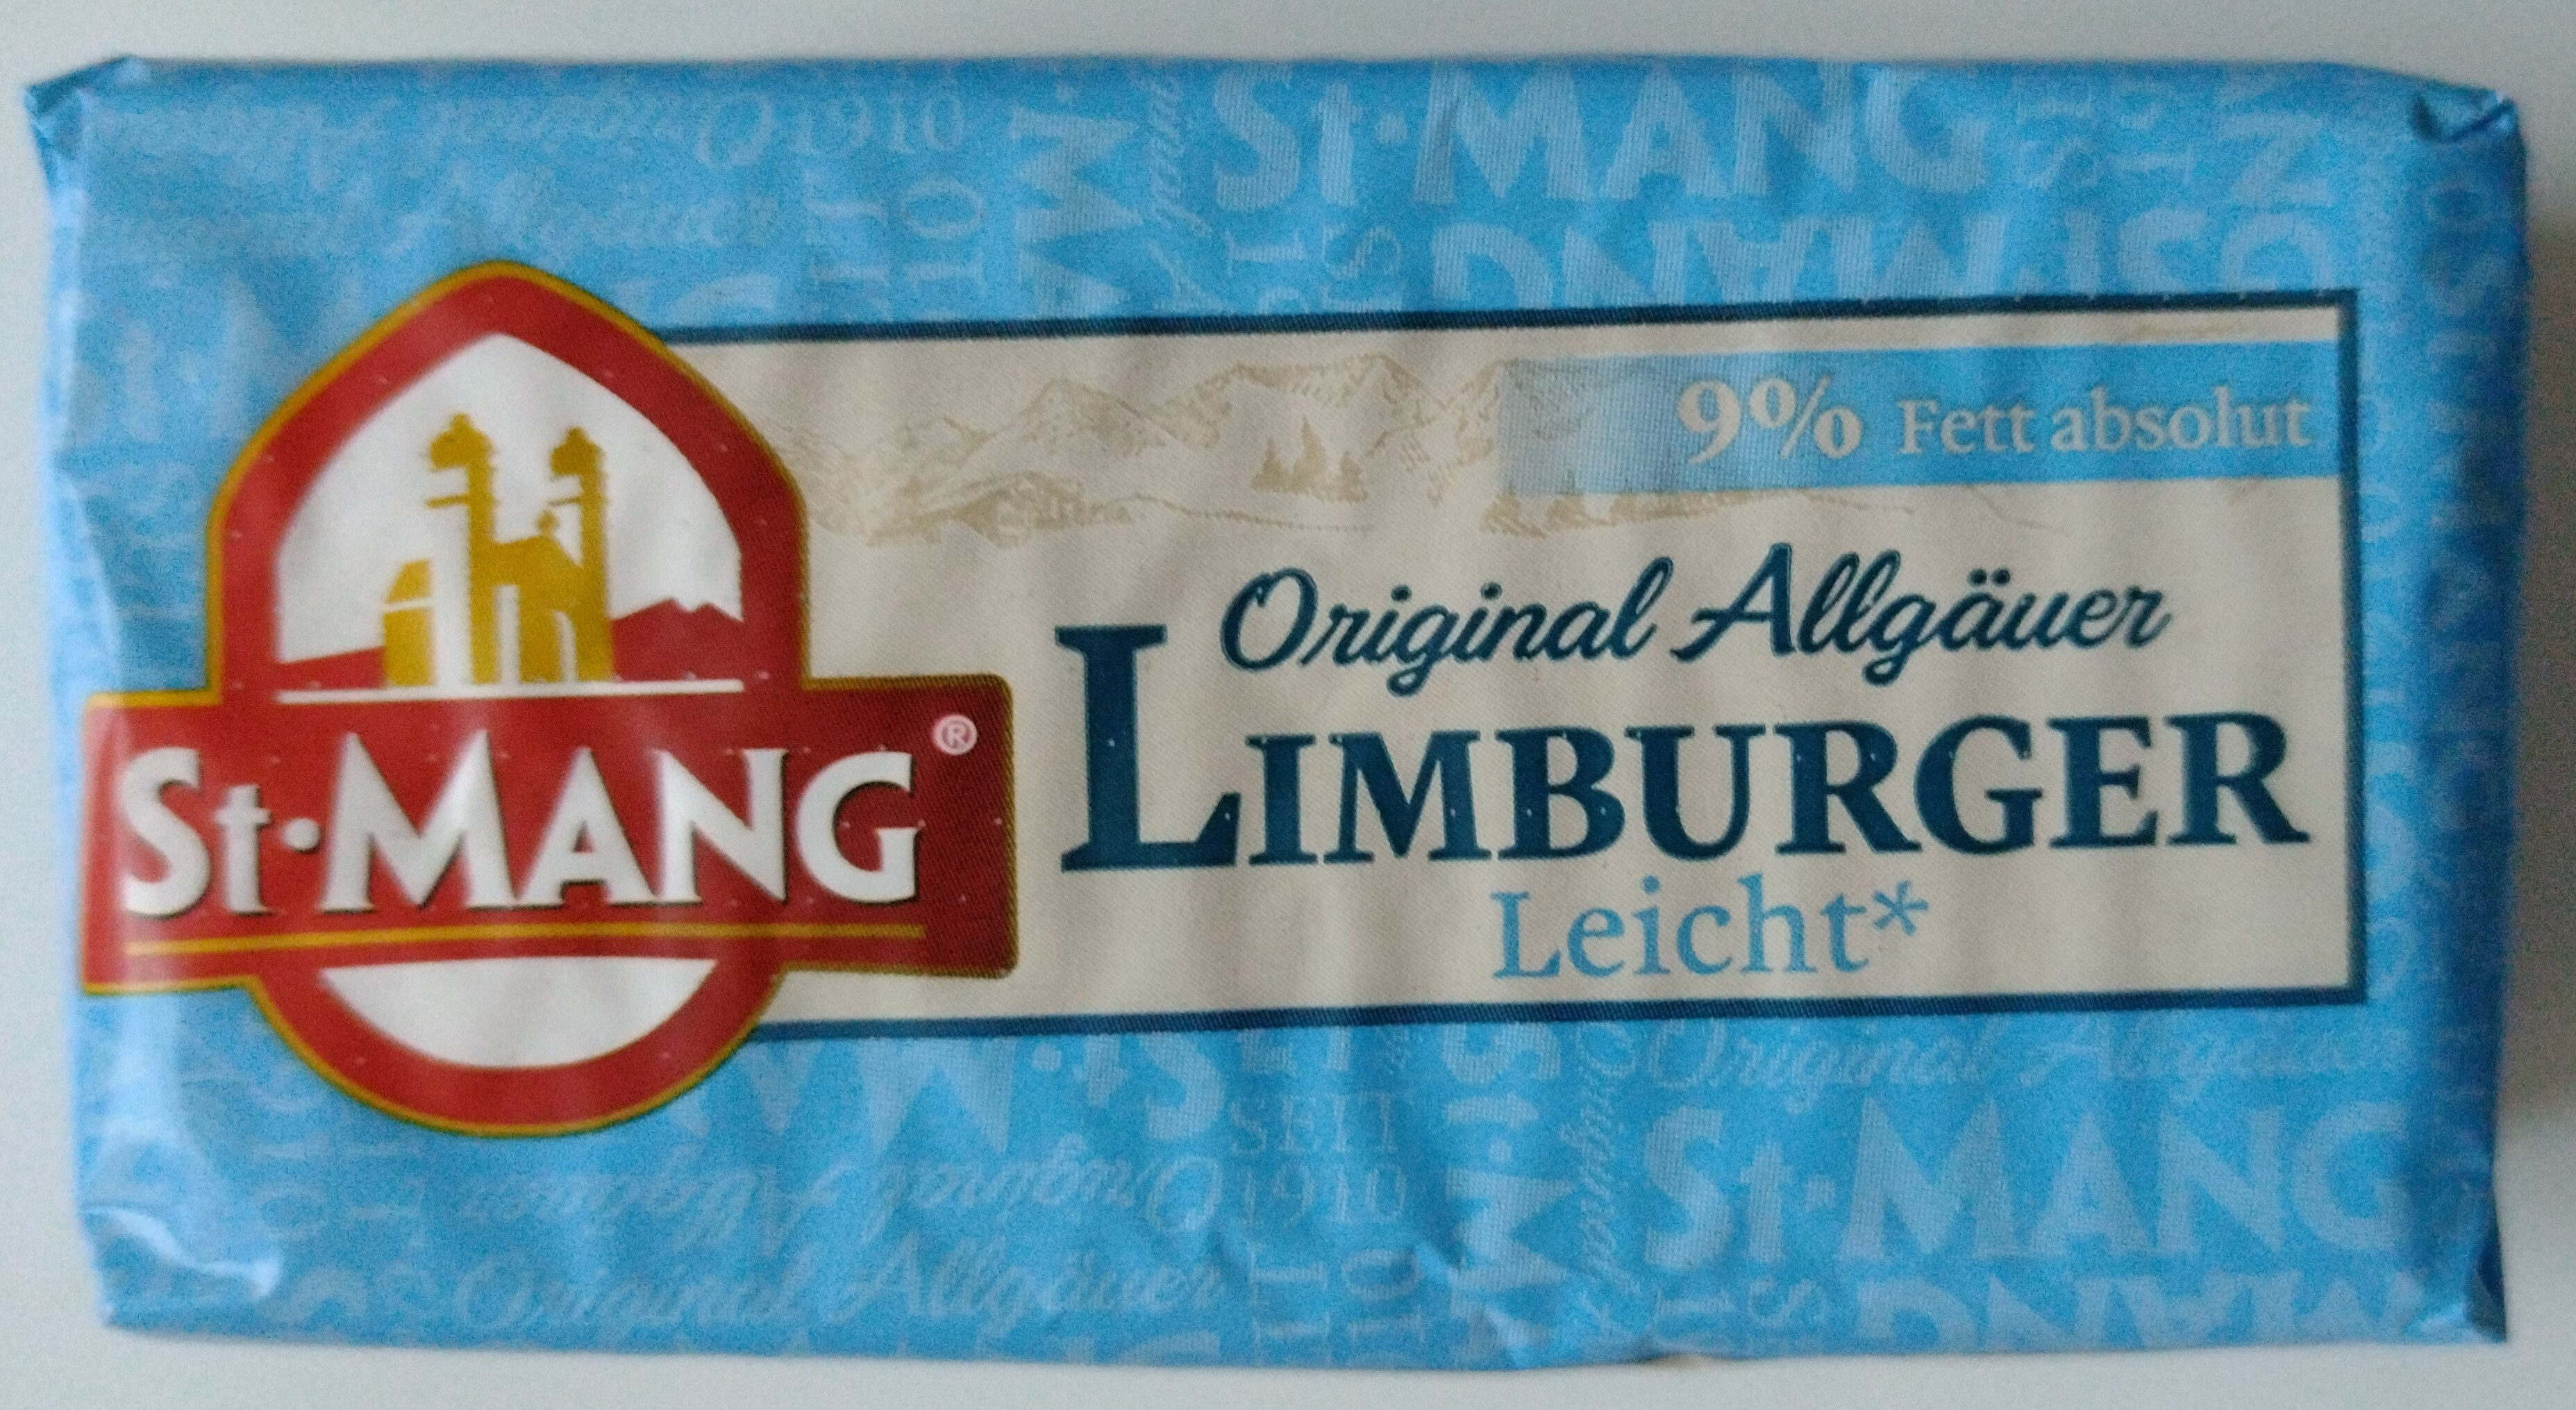 Käse - Limburger Leicht 9% Fett absolut - Produit - de